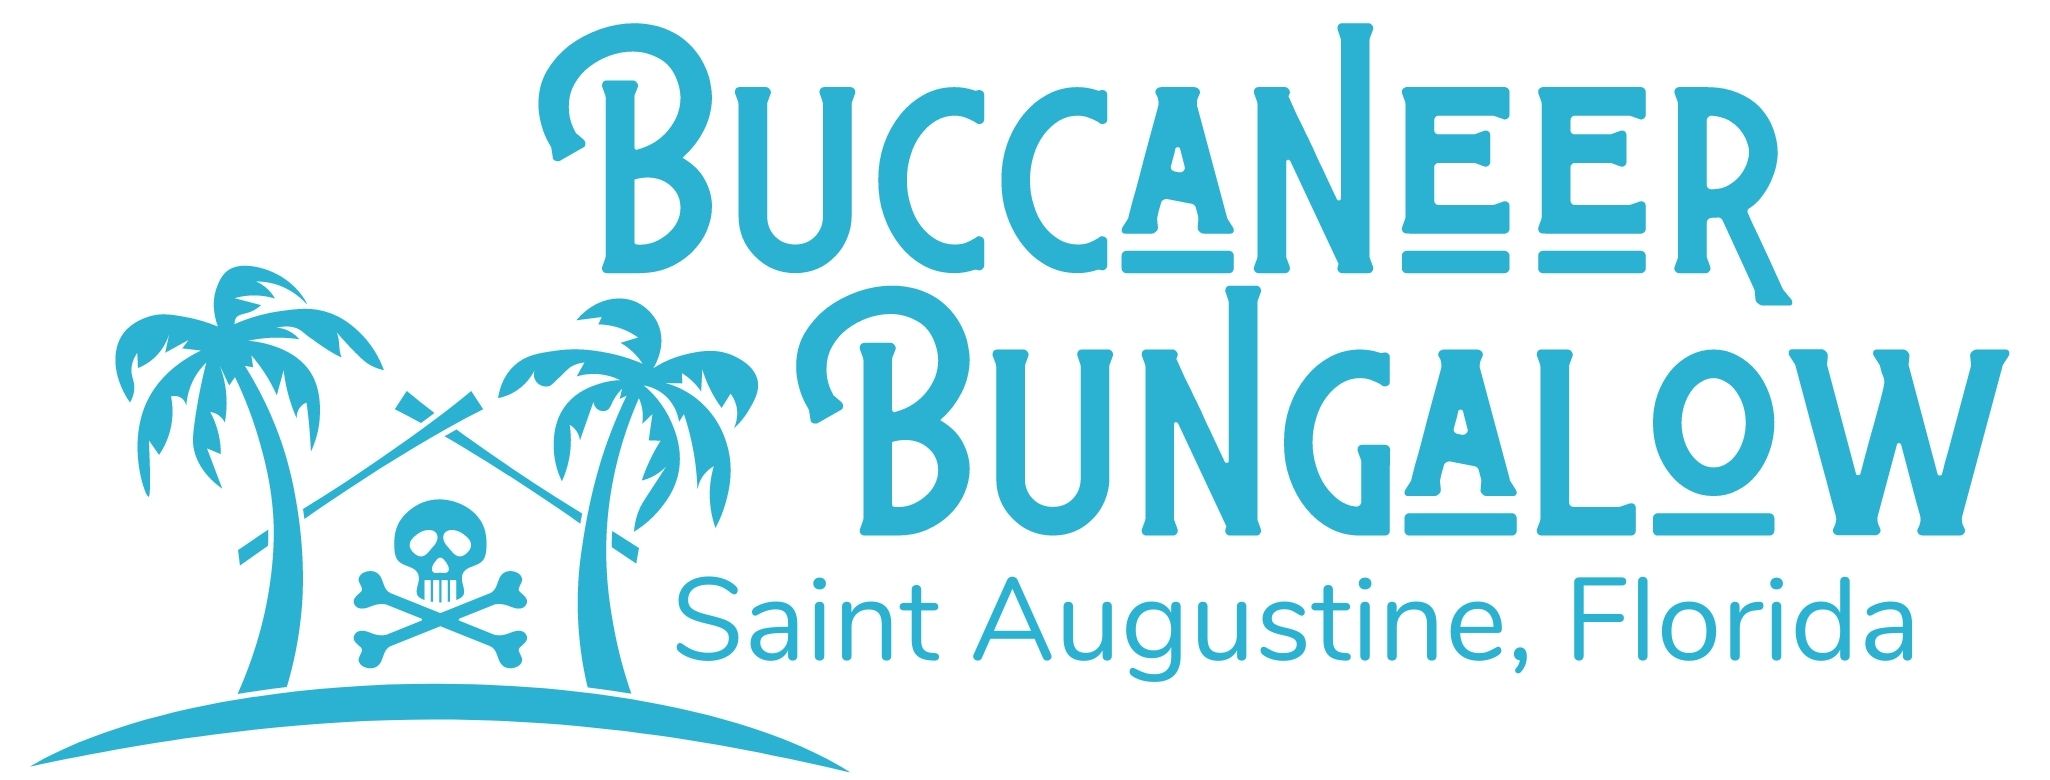 Buccaneer Bungalow Header 1